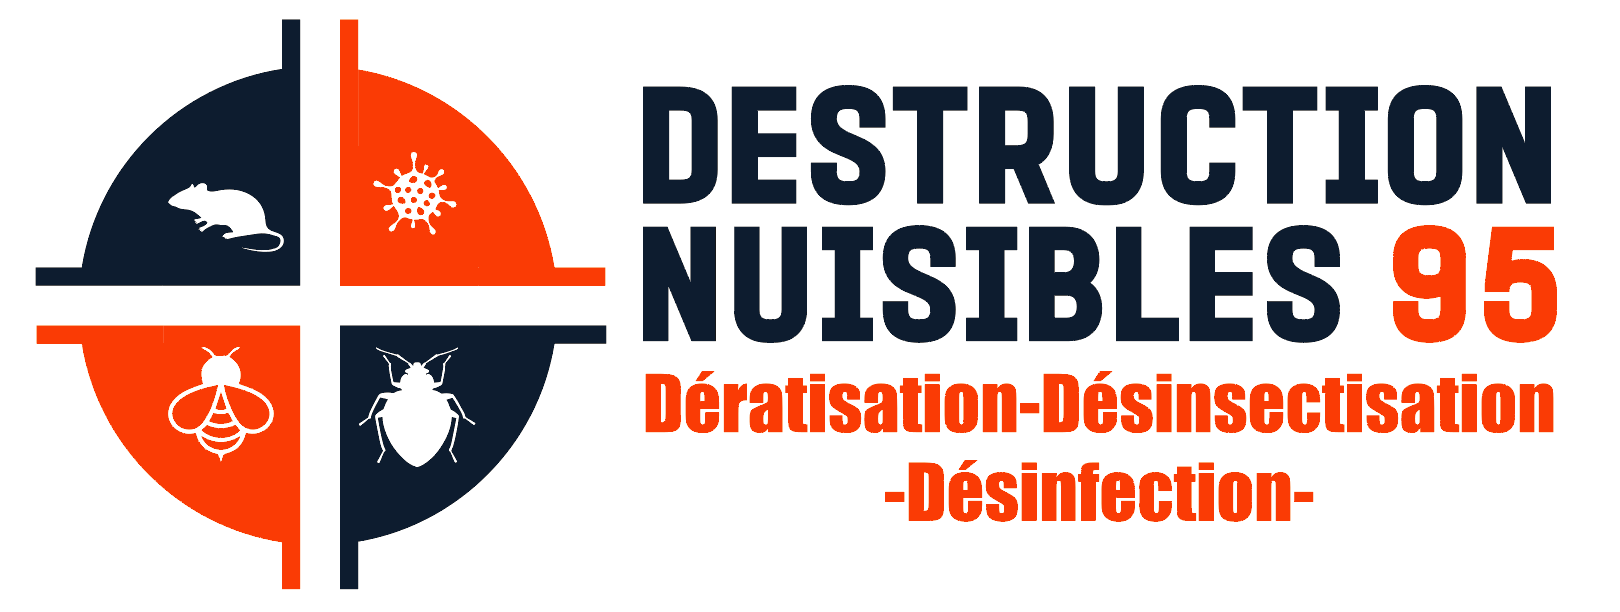 Destruction nuisibles 95 Dératisation Désinsectisation Désinfection Logo